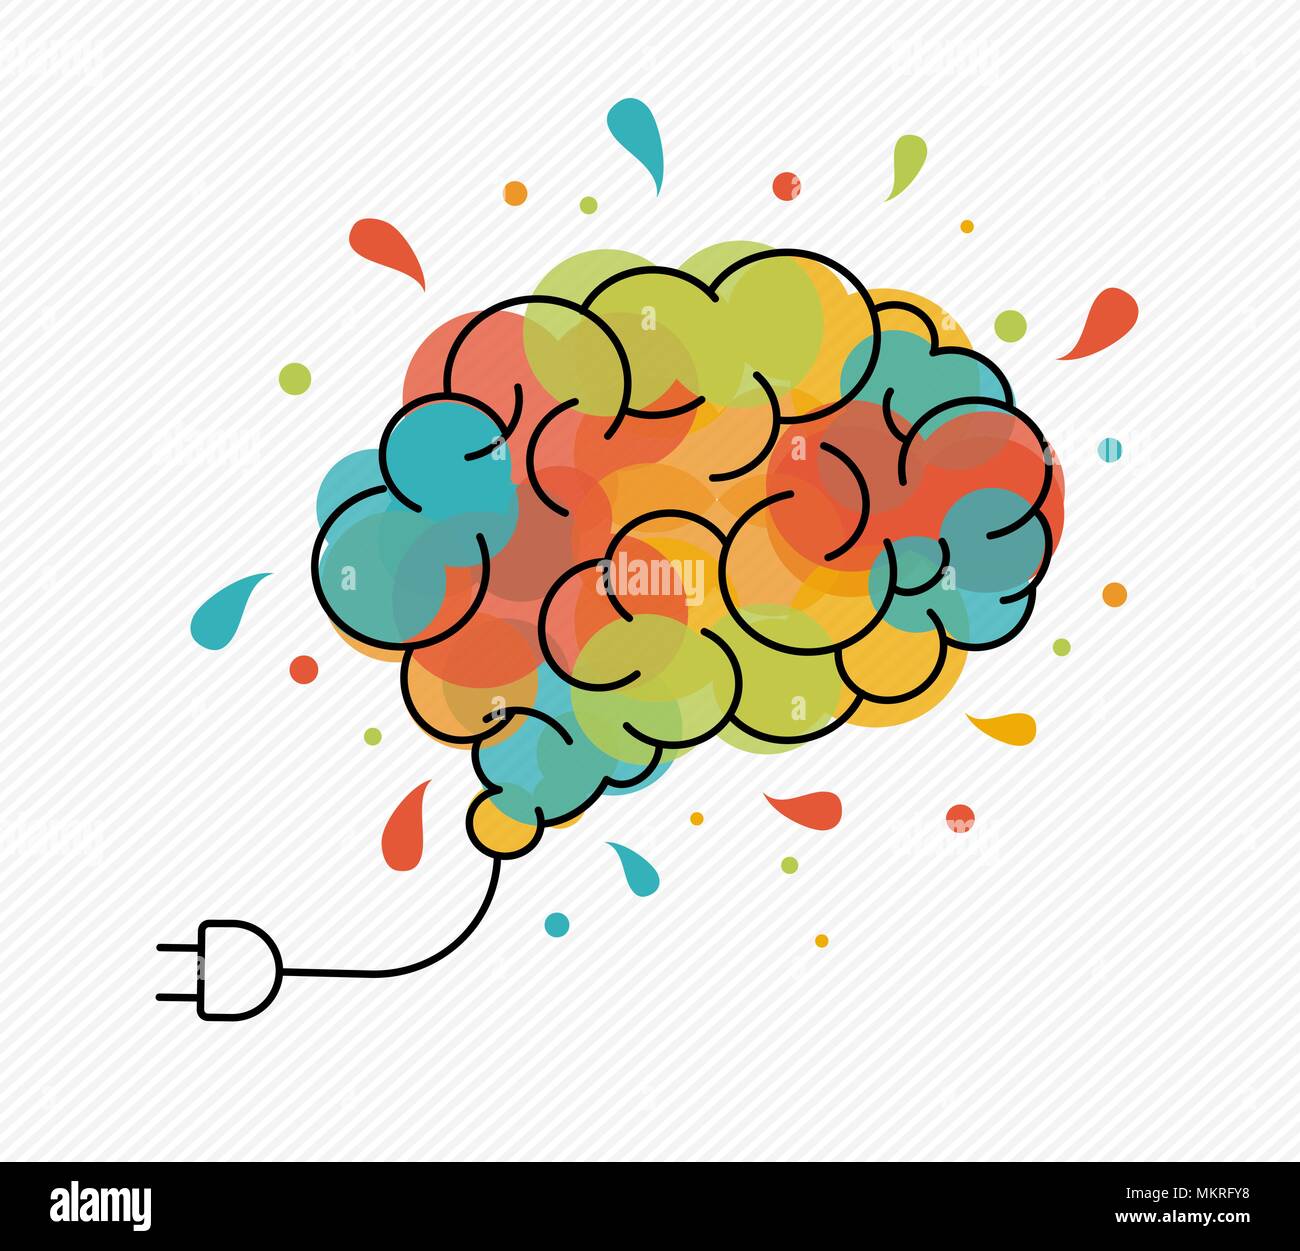 L'imagination créative concept illustration dans la conception moderne avec des grandes lignes du cerveau humain comme splash ampoule électrique. Vecteur EPS10. Illustration de Vecteur